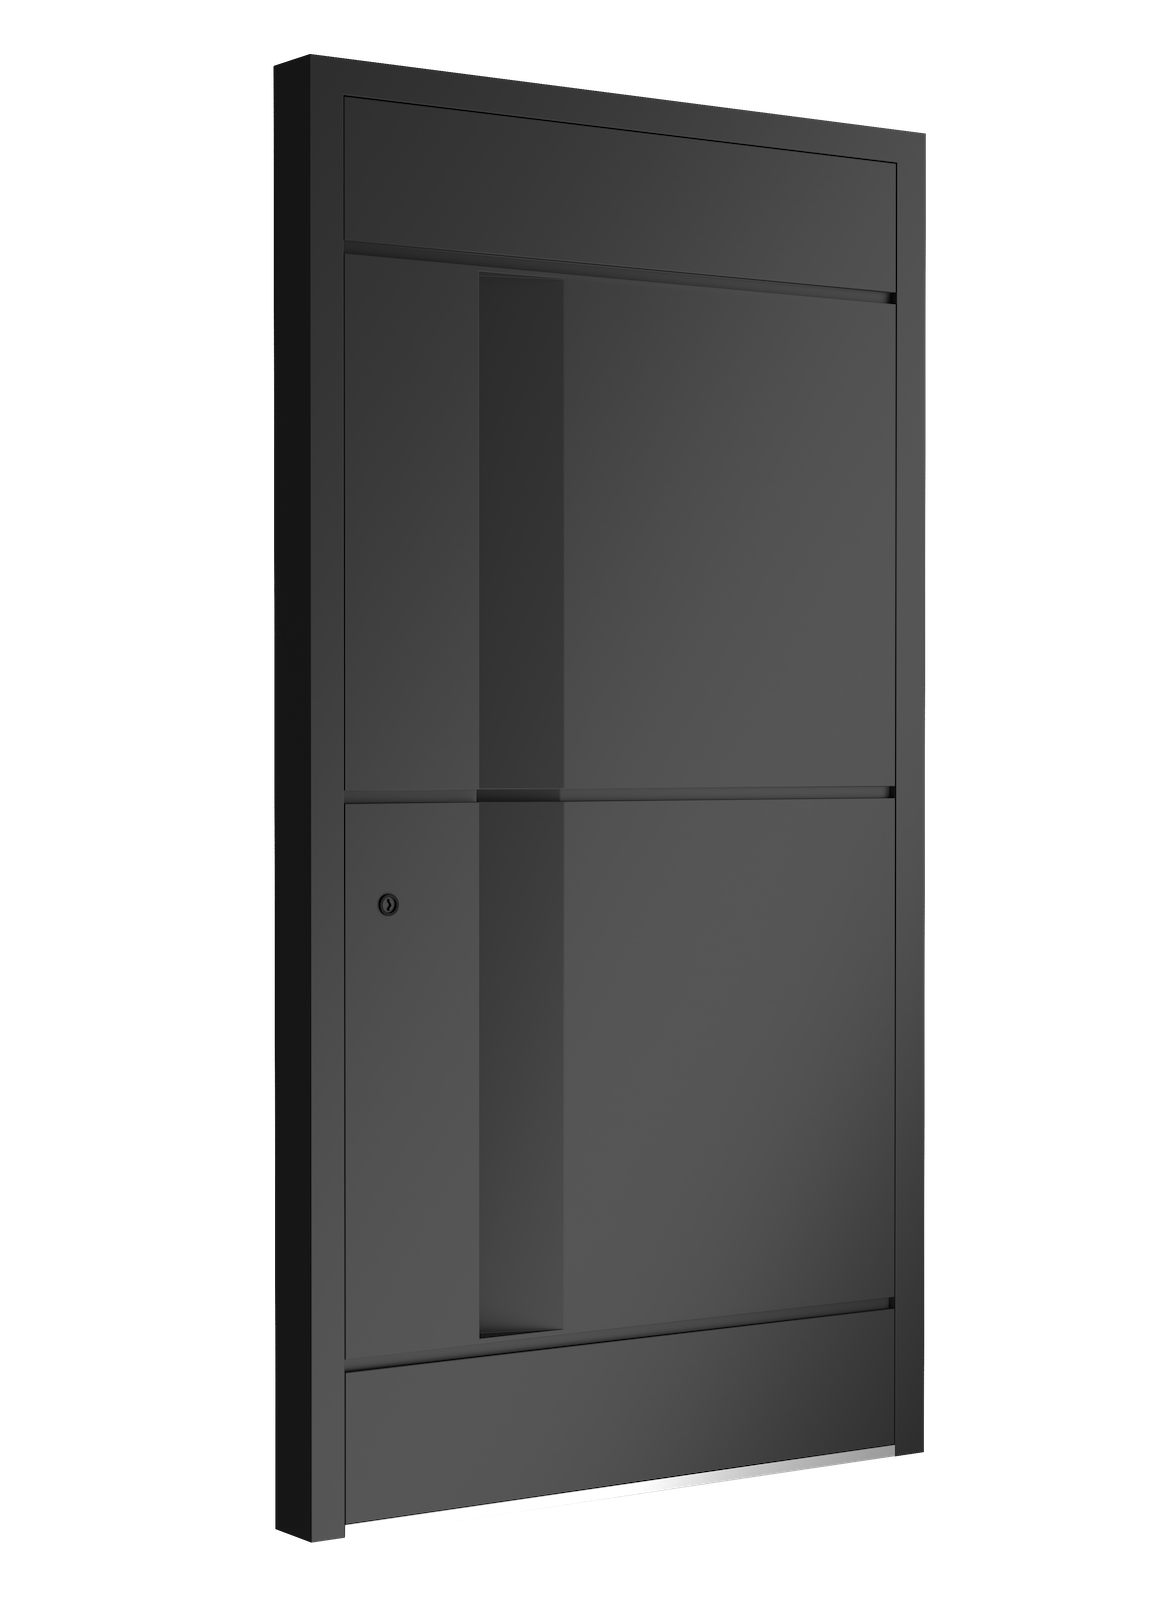 Drzwi - Seria belgijska - 5032 - Euroa, aluminium, drzwi z certyfikatem, wysoka jakość drzwi